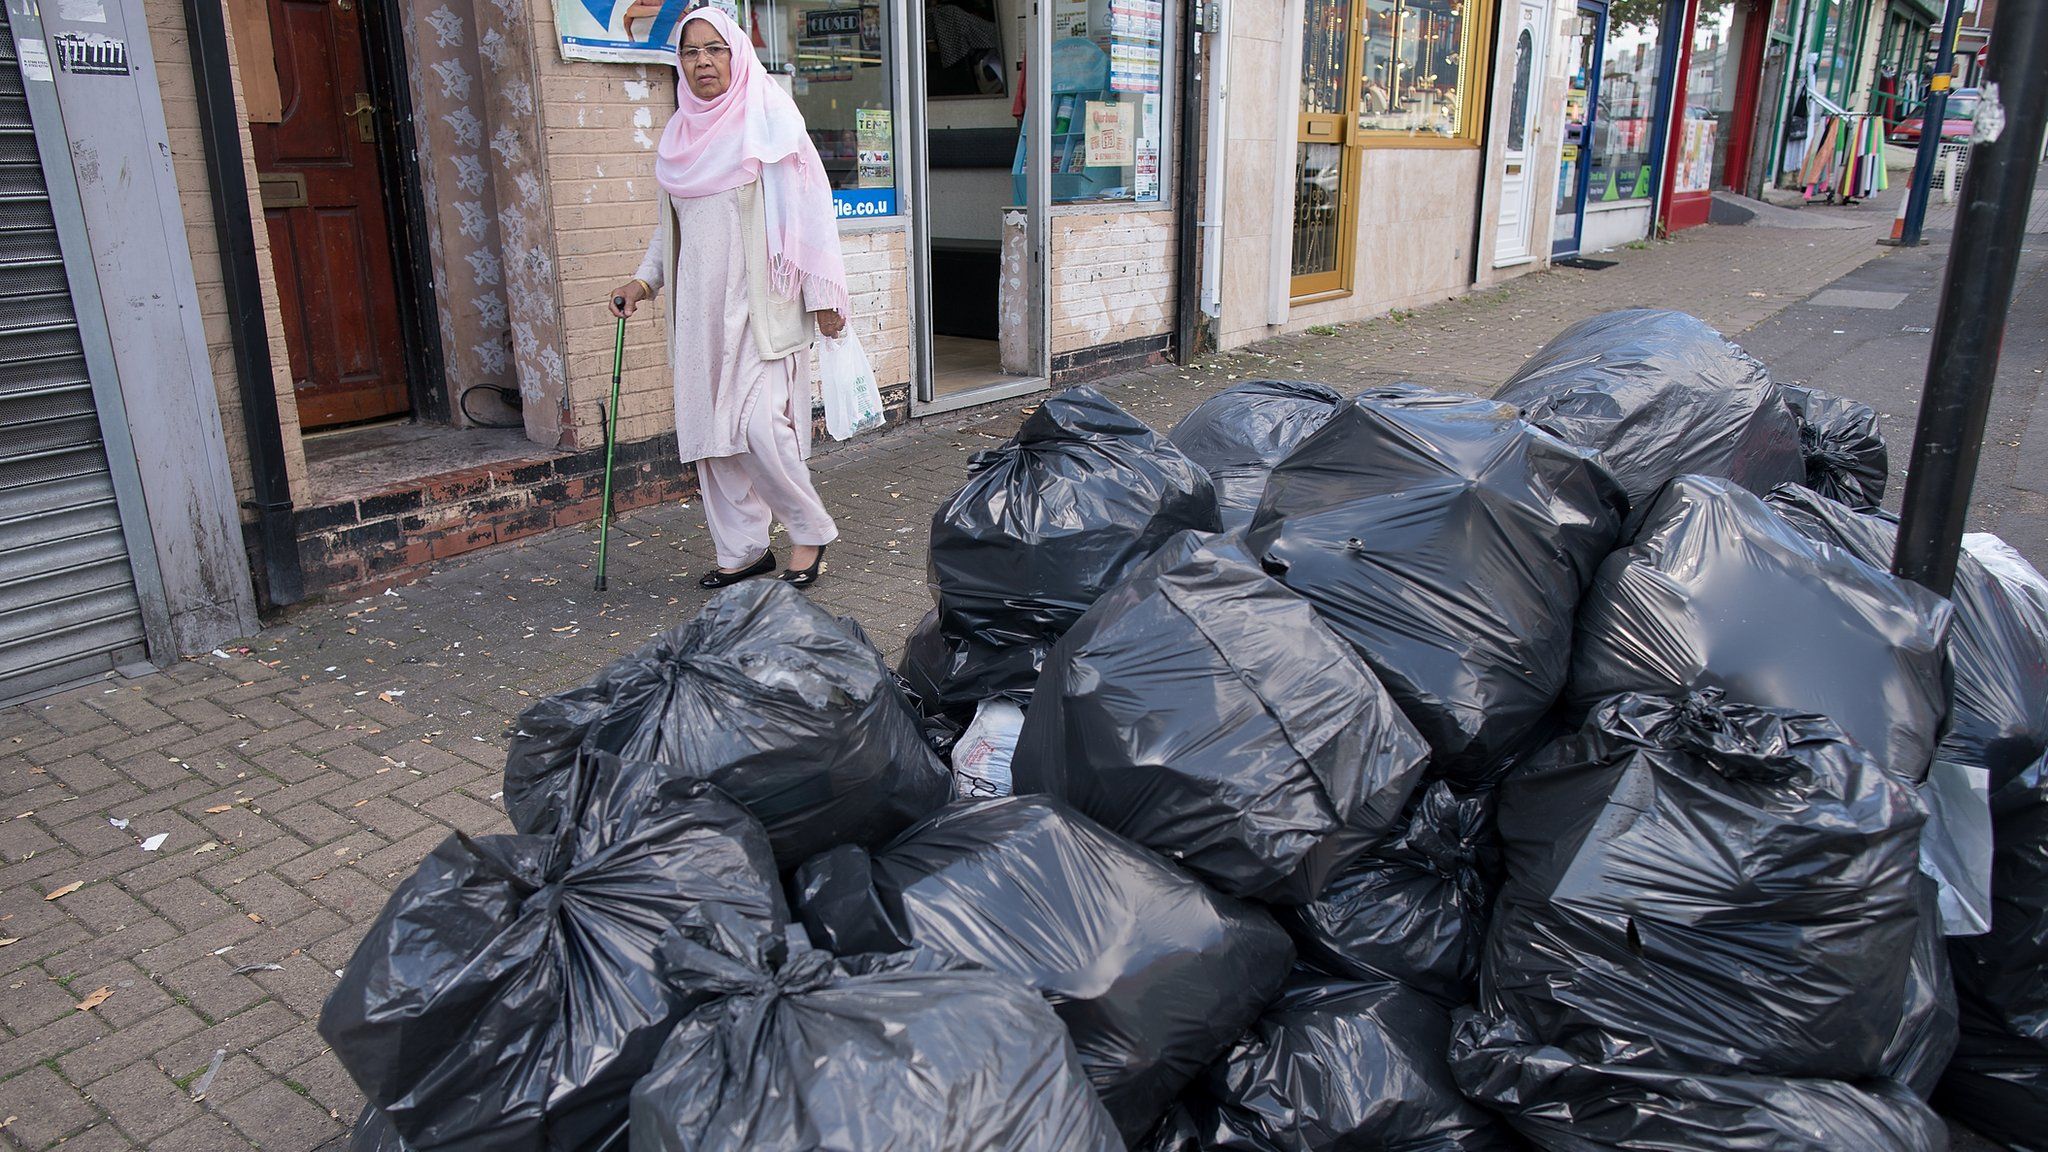 Bin bags piled up in Birmingham